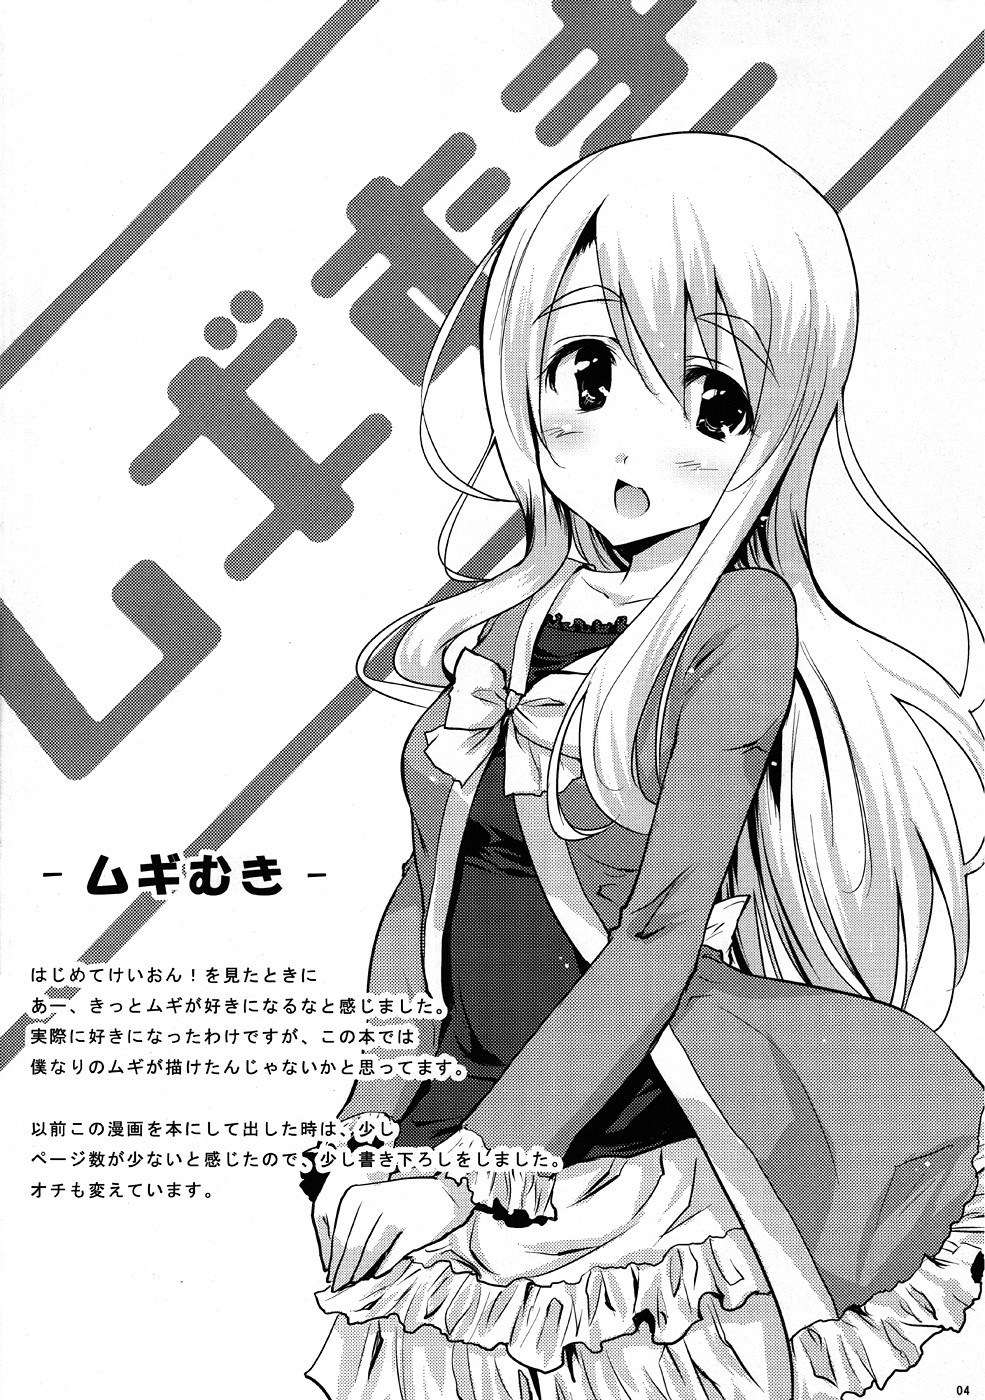 Mugi PiQ+ hentai manga picture 2